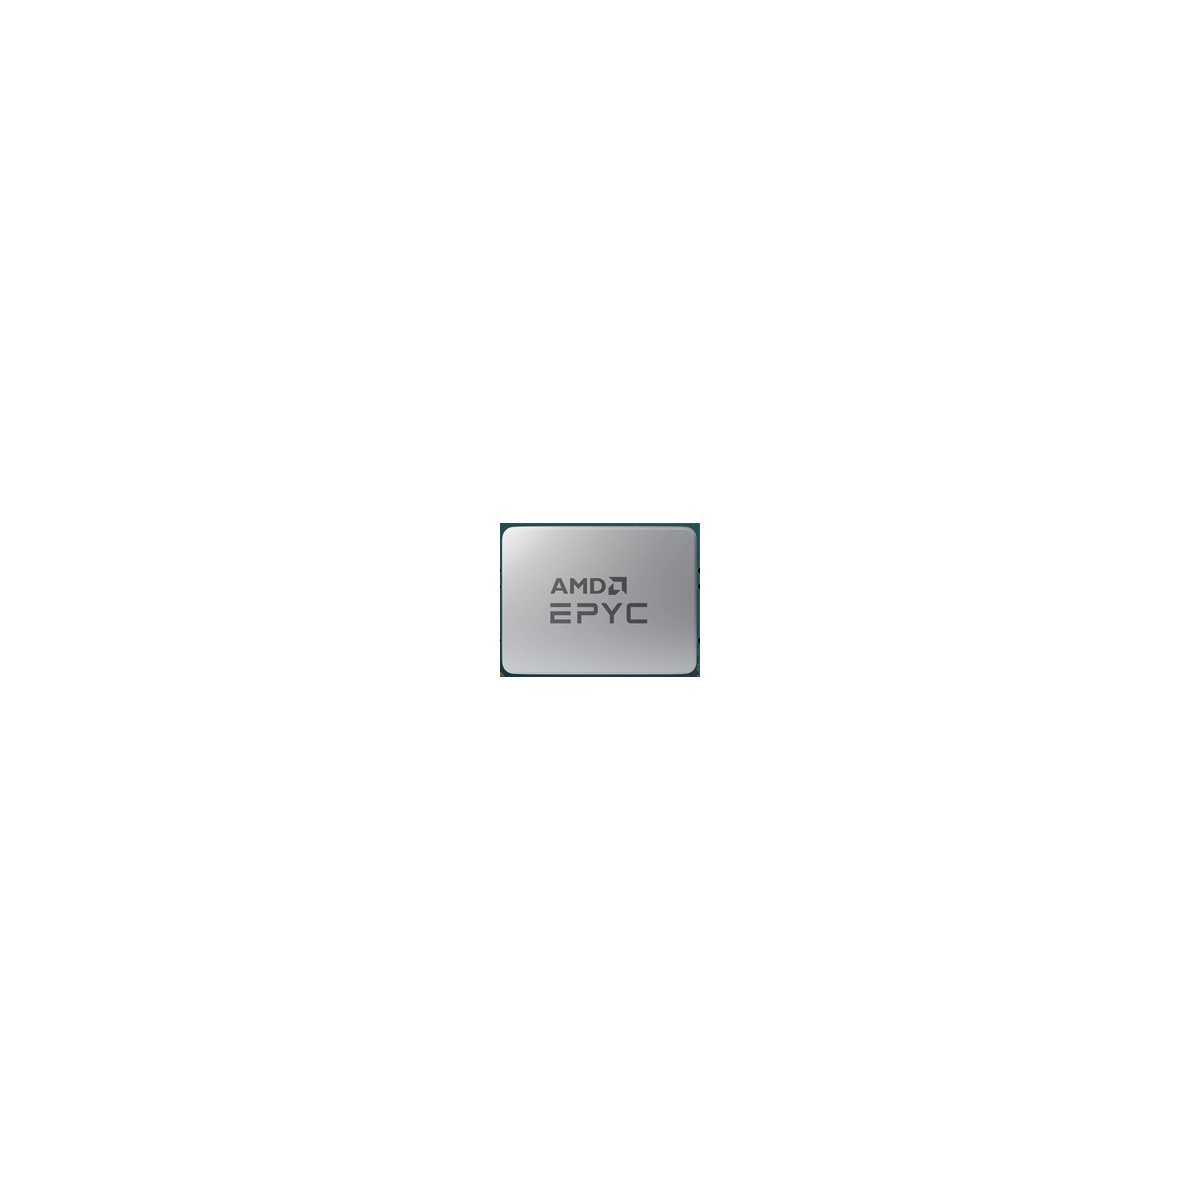 Lenovo ThinkSystem SR665 V3 AMD EPYC 9354 32C - AMD EPYC - 3.25 GHz